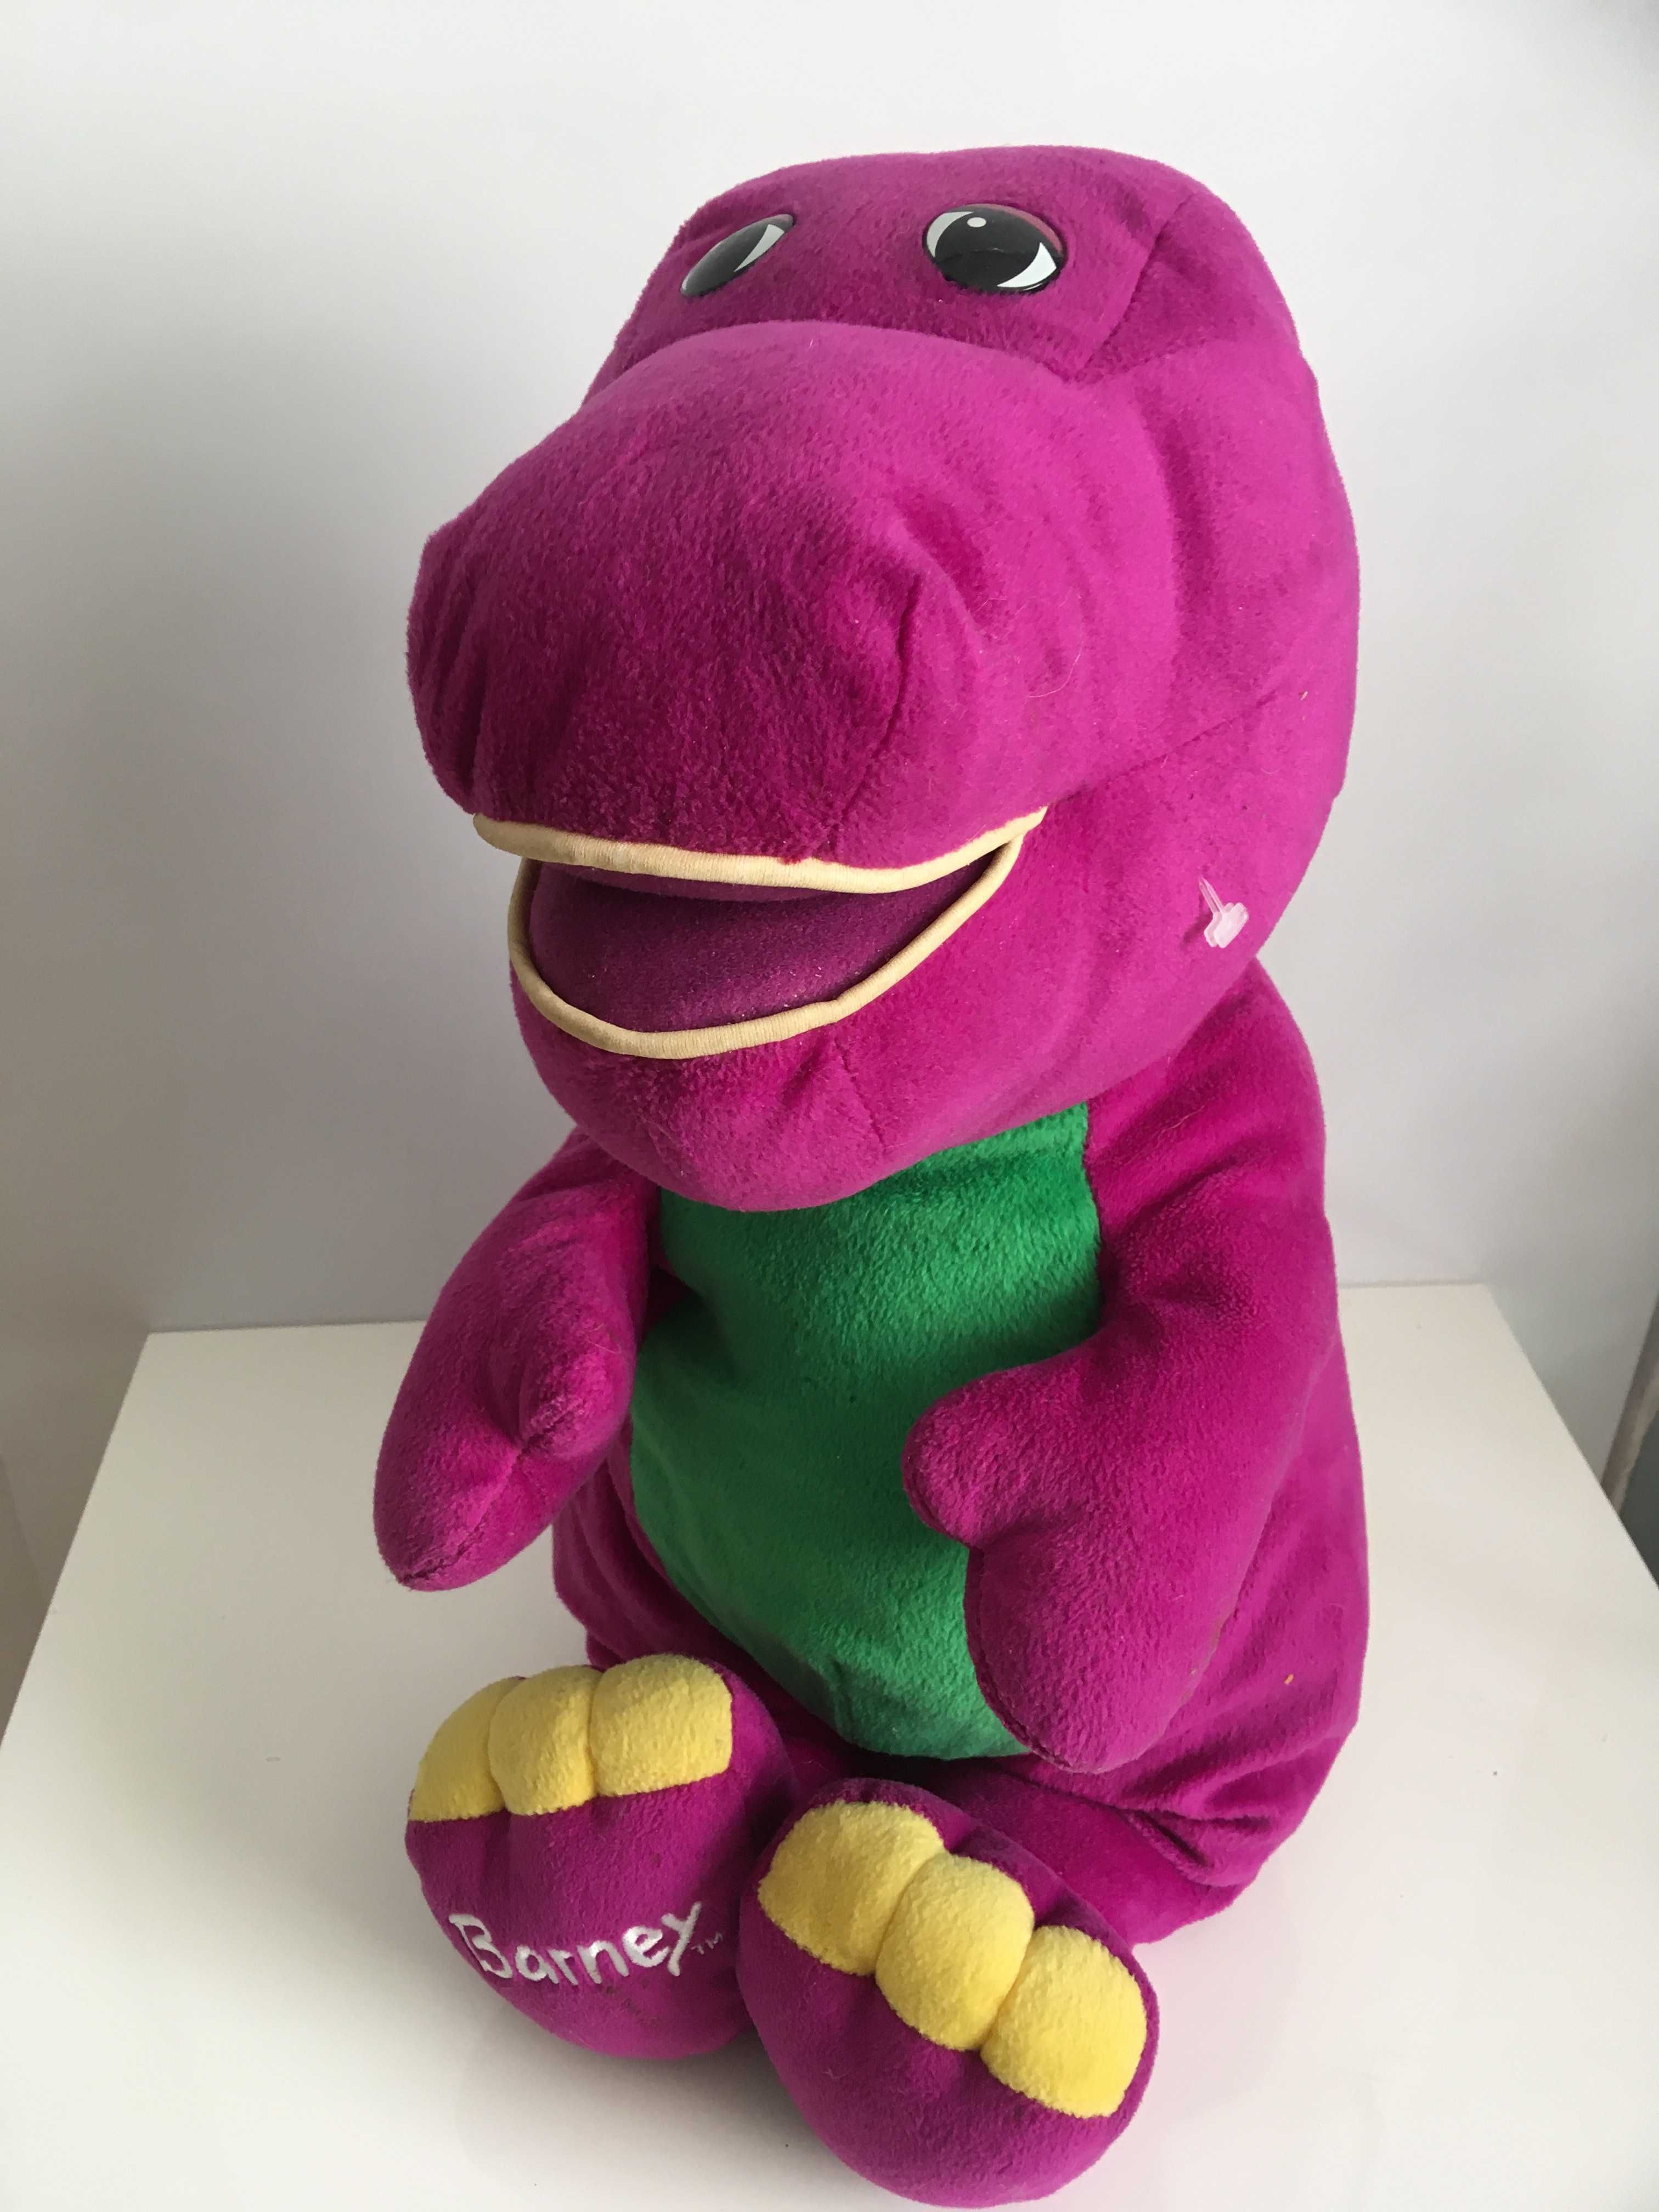 Barney dinozaur interaktywny duży XXL oryginał maskotka